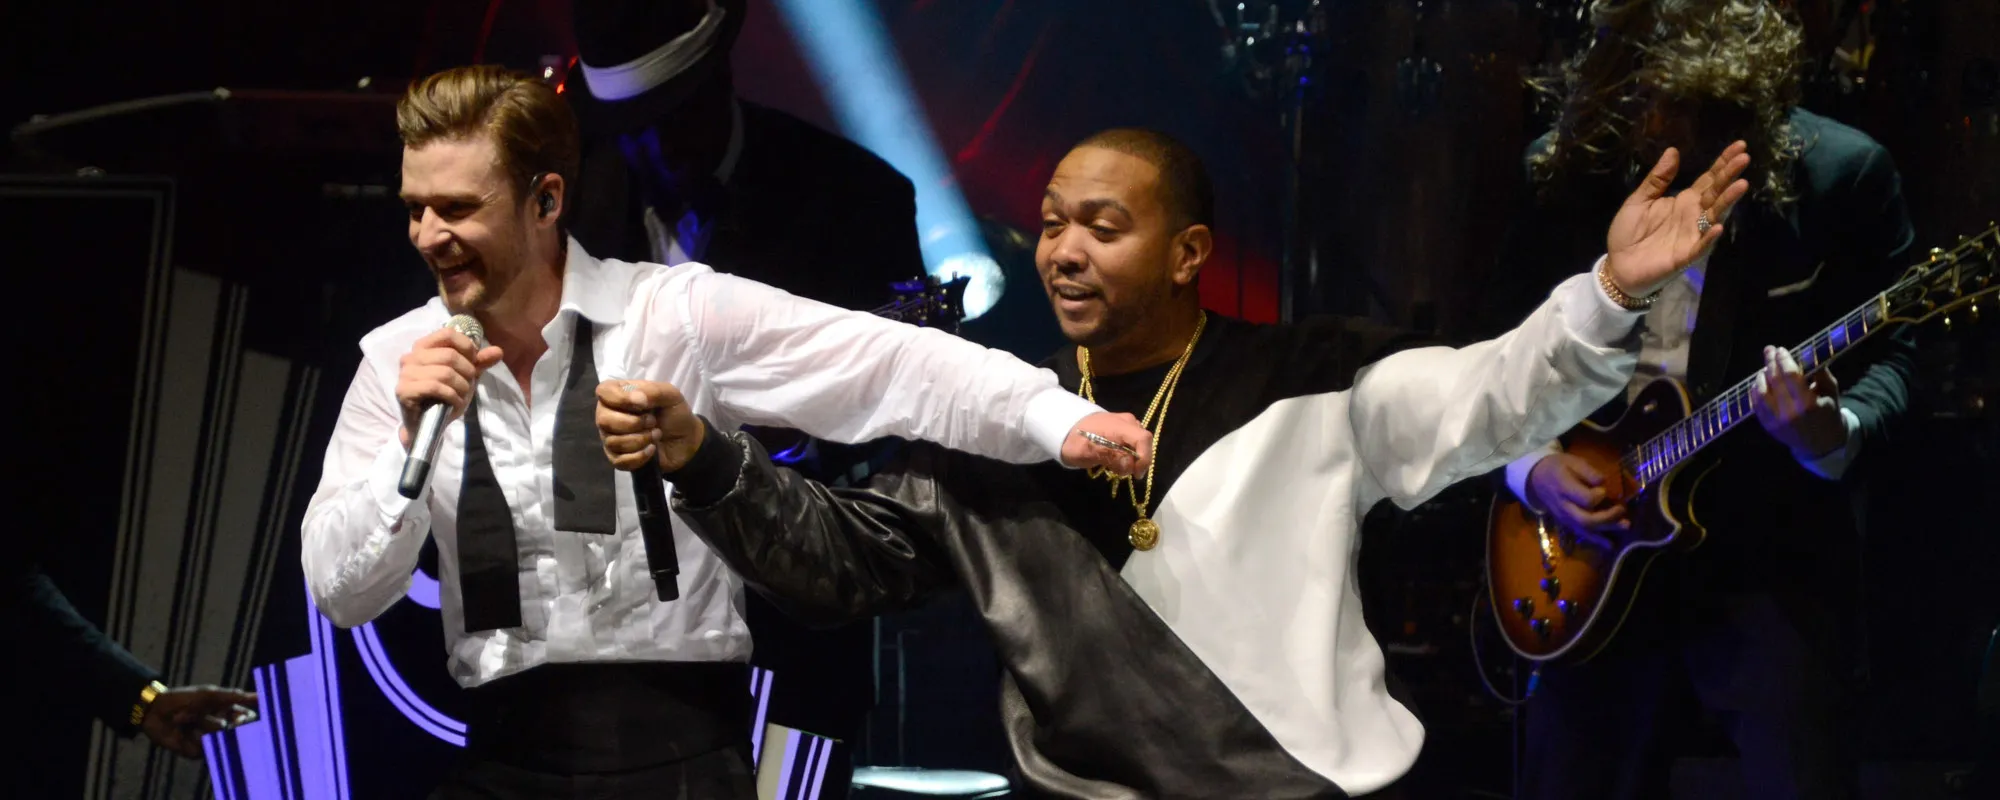 Timbaland, Justin Timberlake, Nelly Furtado Drop New Single “Keep Going Up”